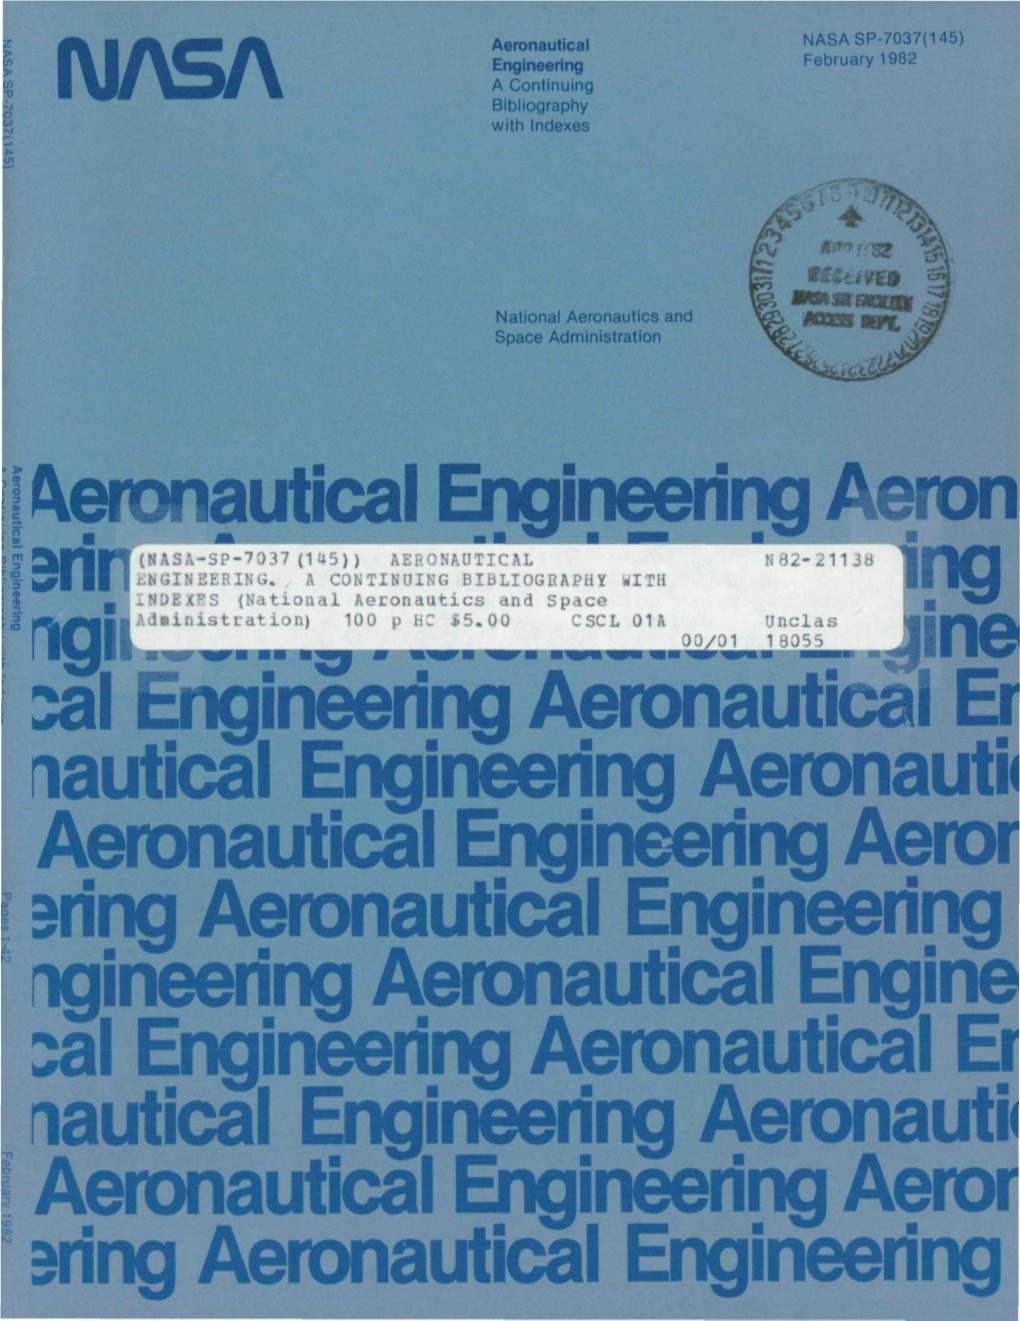 Ii' C Aeronautical Engineering Aeron ^Al Engineering Aeronautical Er Lautical Engineering Aeronautic Aeronautical Engineering Ae